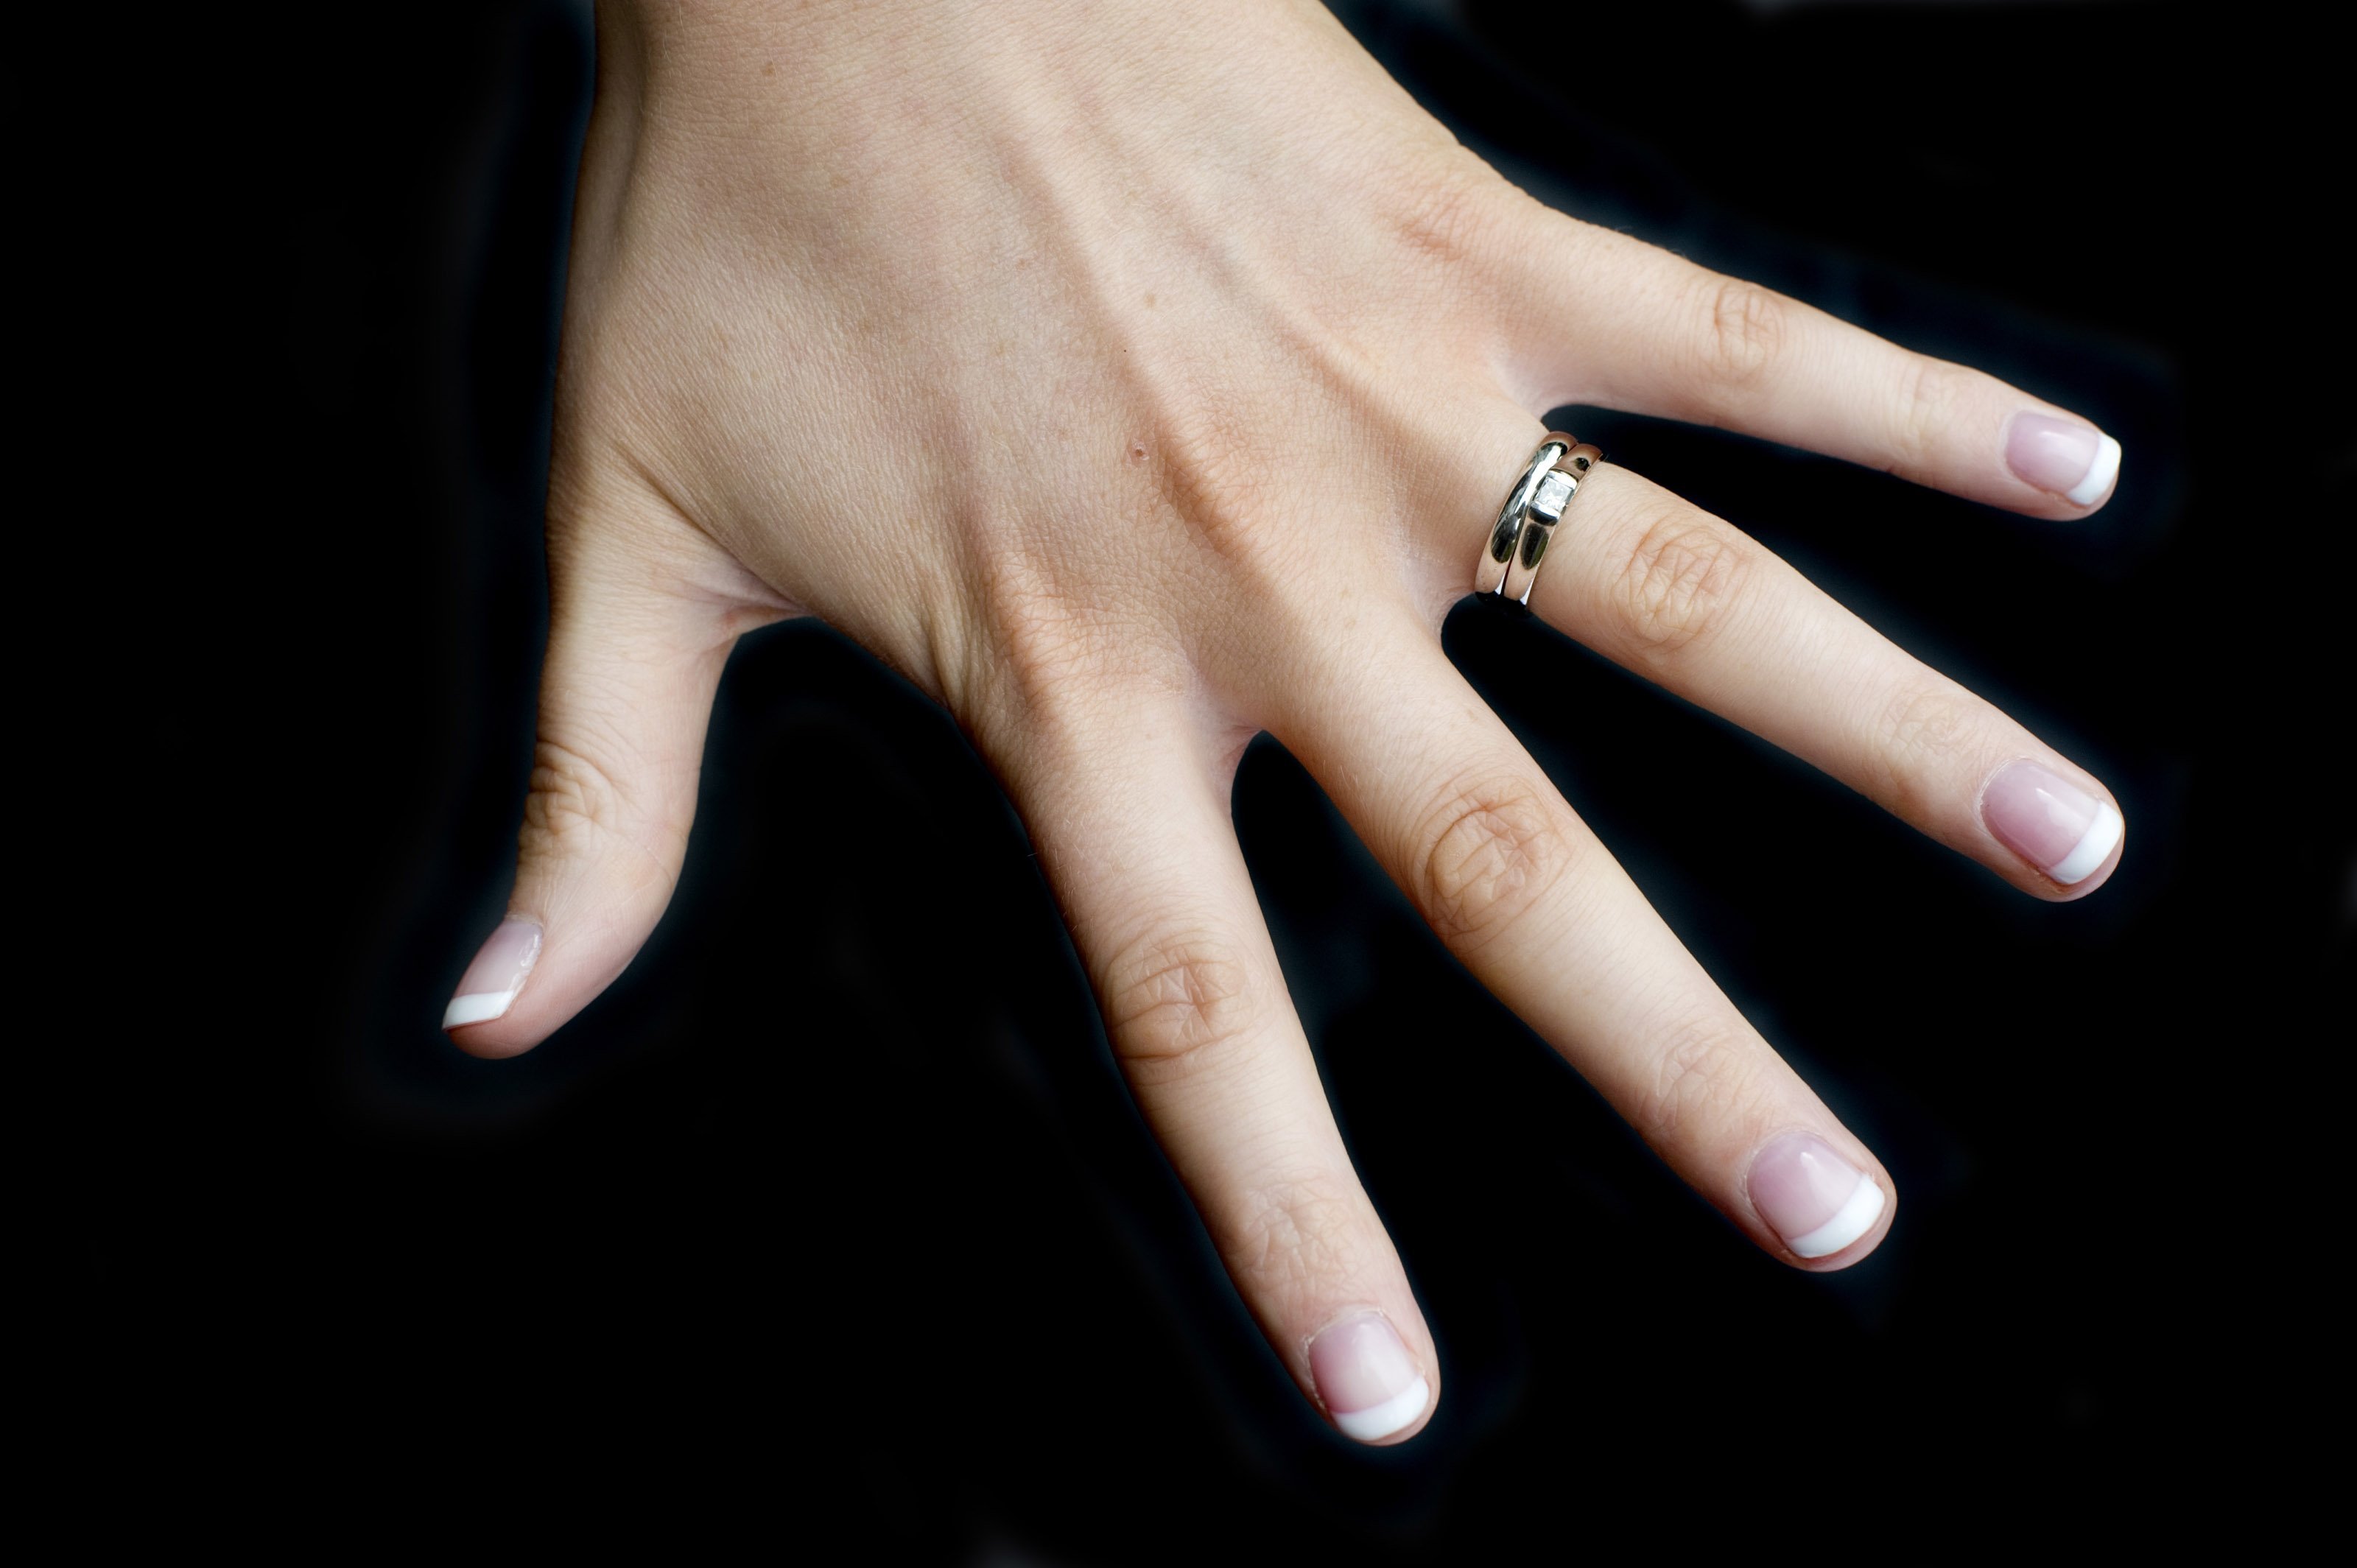 Кольцо на правом безымянном пальце у девушки. Обручальное кольцо на пальце. Кольцо на руке. Кольцо на безымянном пальце. Женская рука с кольцом.